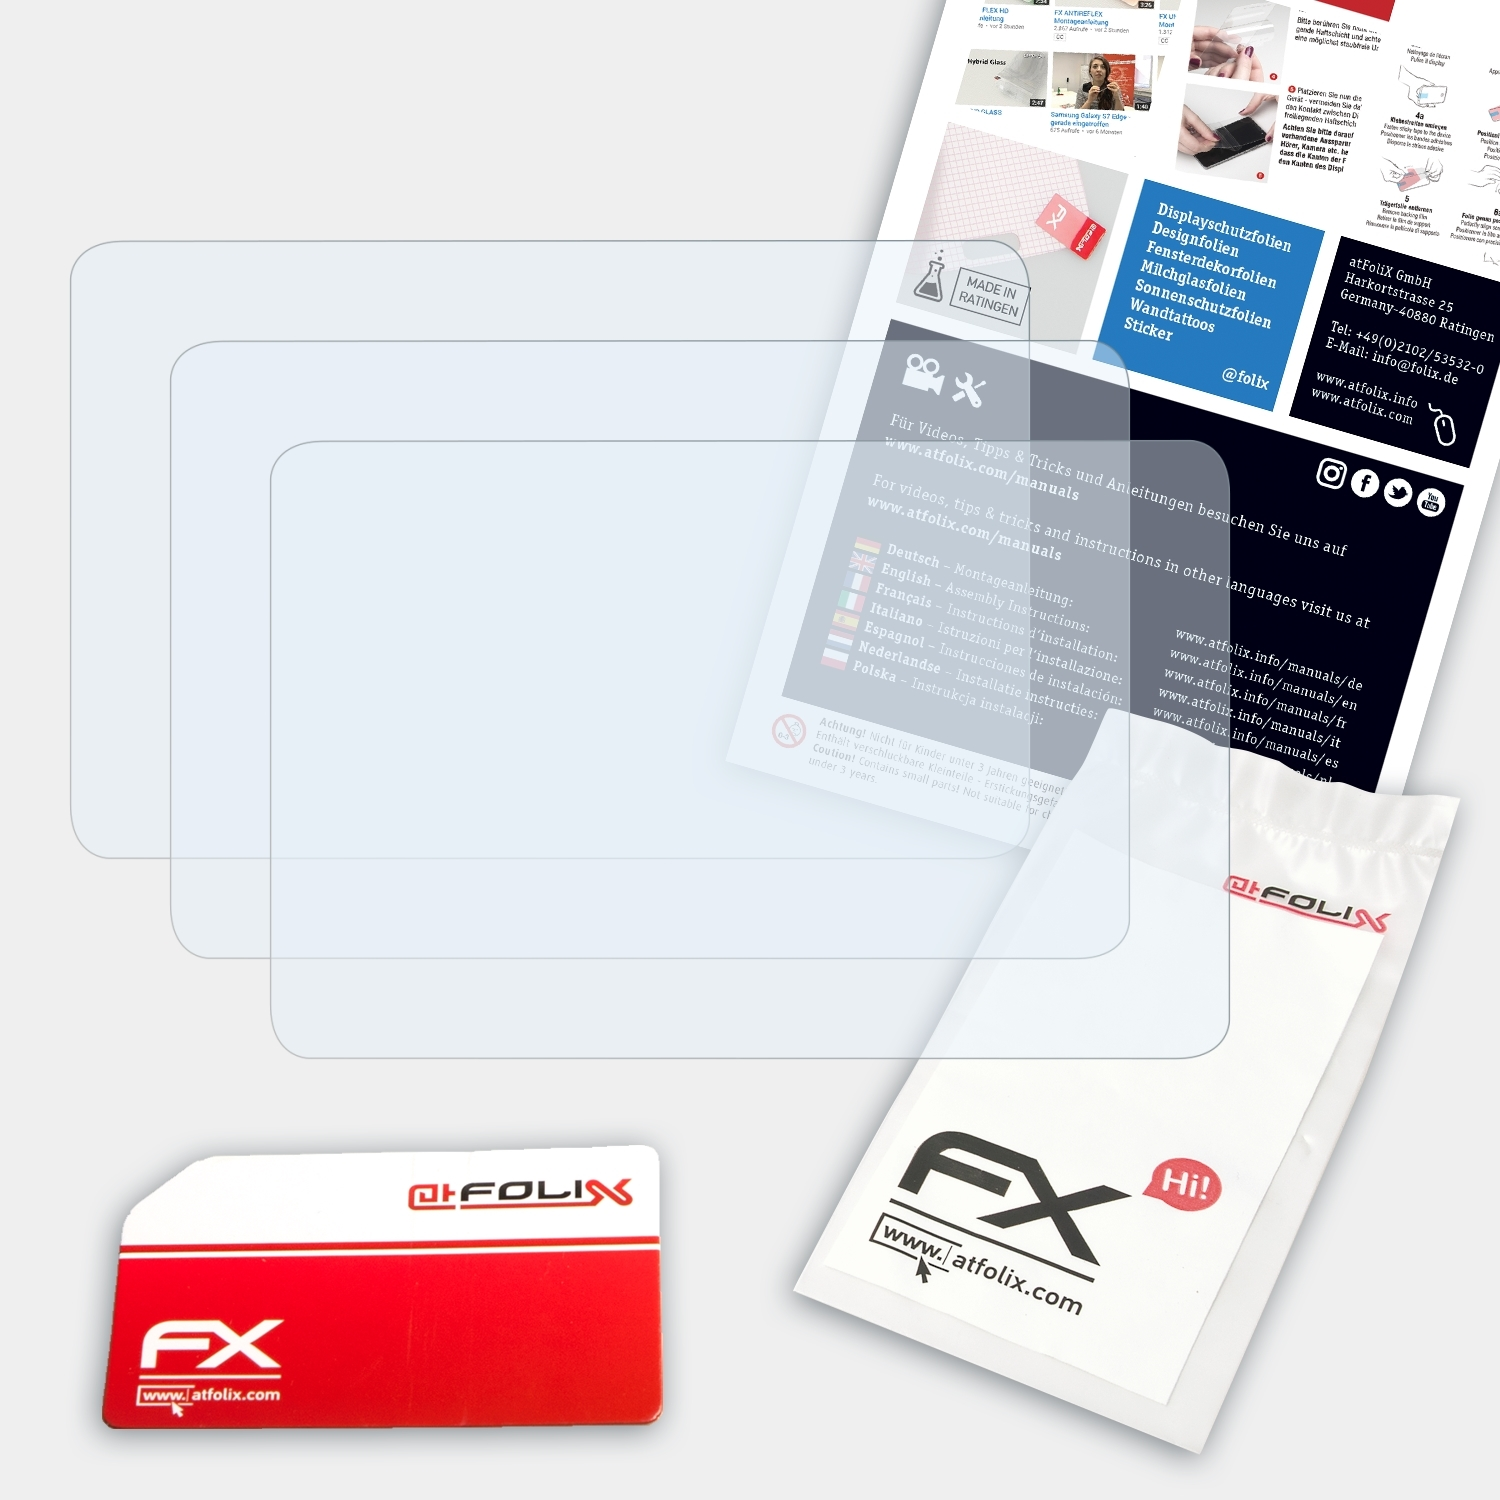 ATFOLIX 3x FX-Clear Displayschutz(für Garmin 301) Foretrex